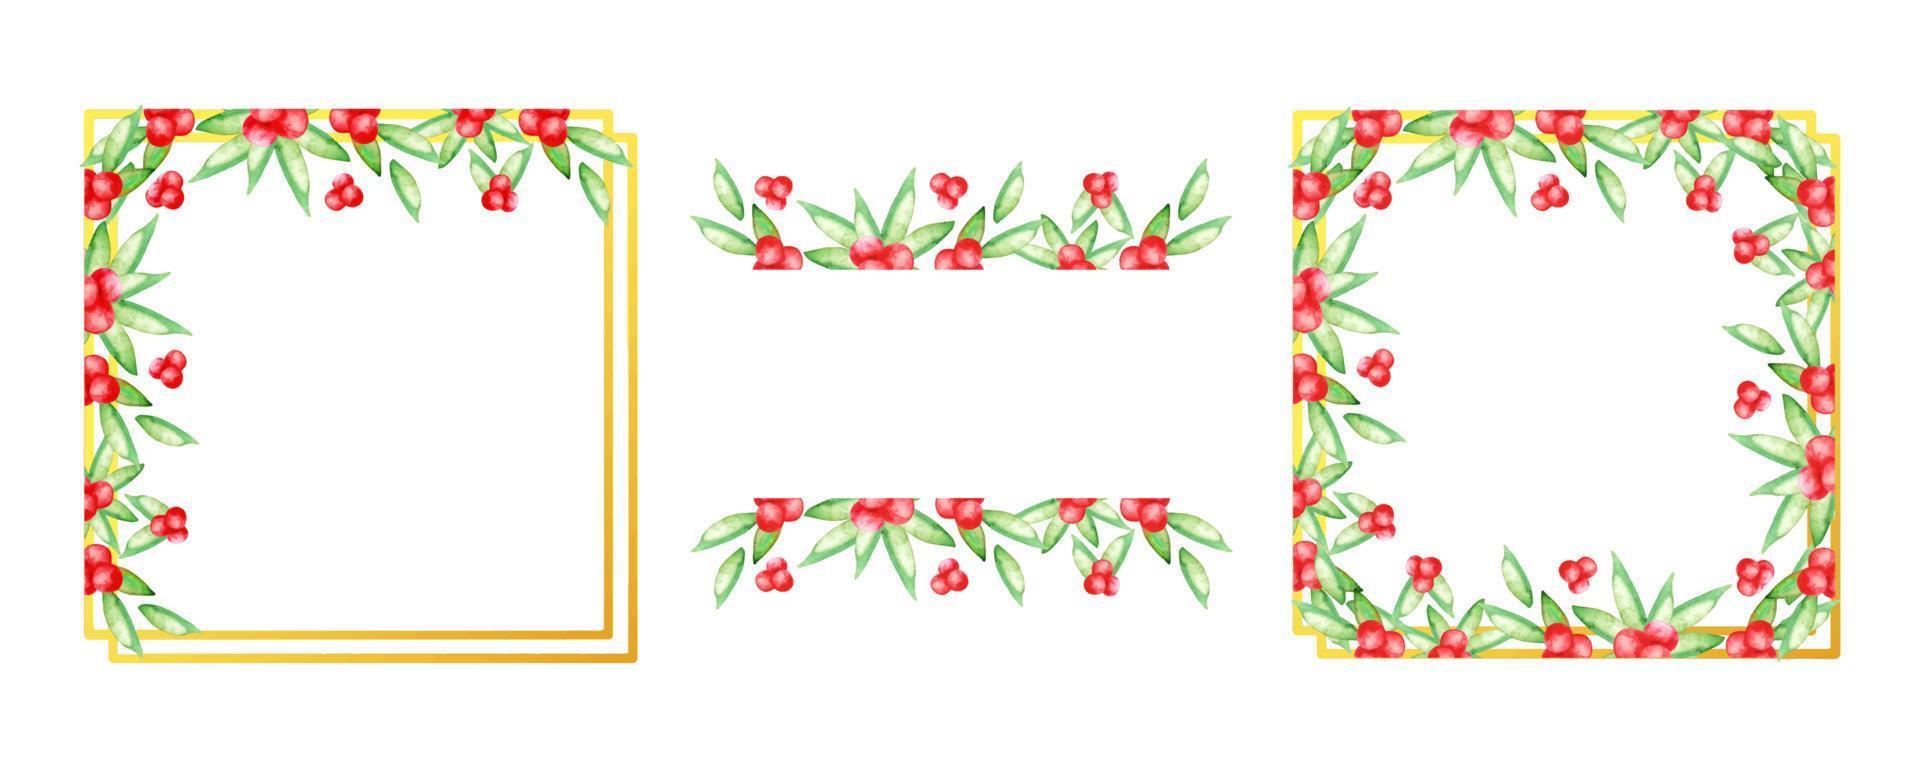 aquarel hulst bessen frame sjabloon geïsoleerd op wit vector set grens bruiloft uitnodiging ontwerp bloemen krans botanisch illustratie elegant kaart decoratie boeket